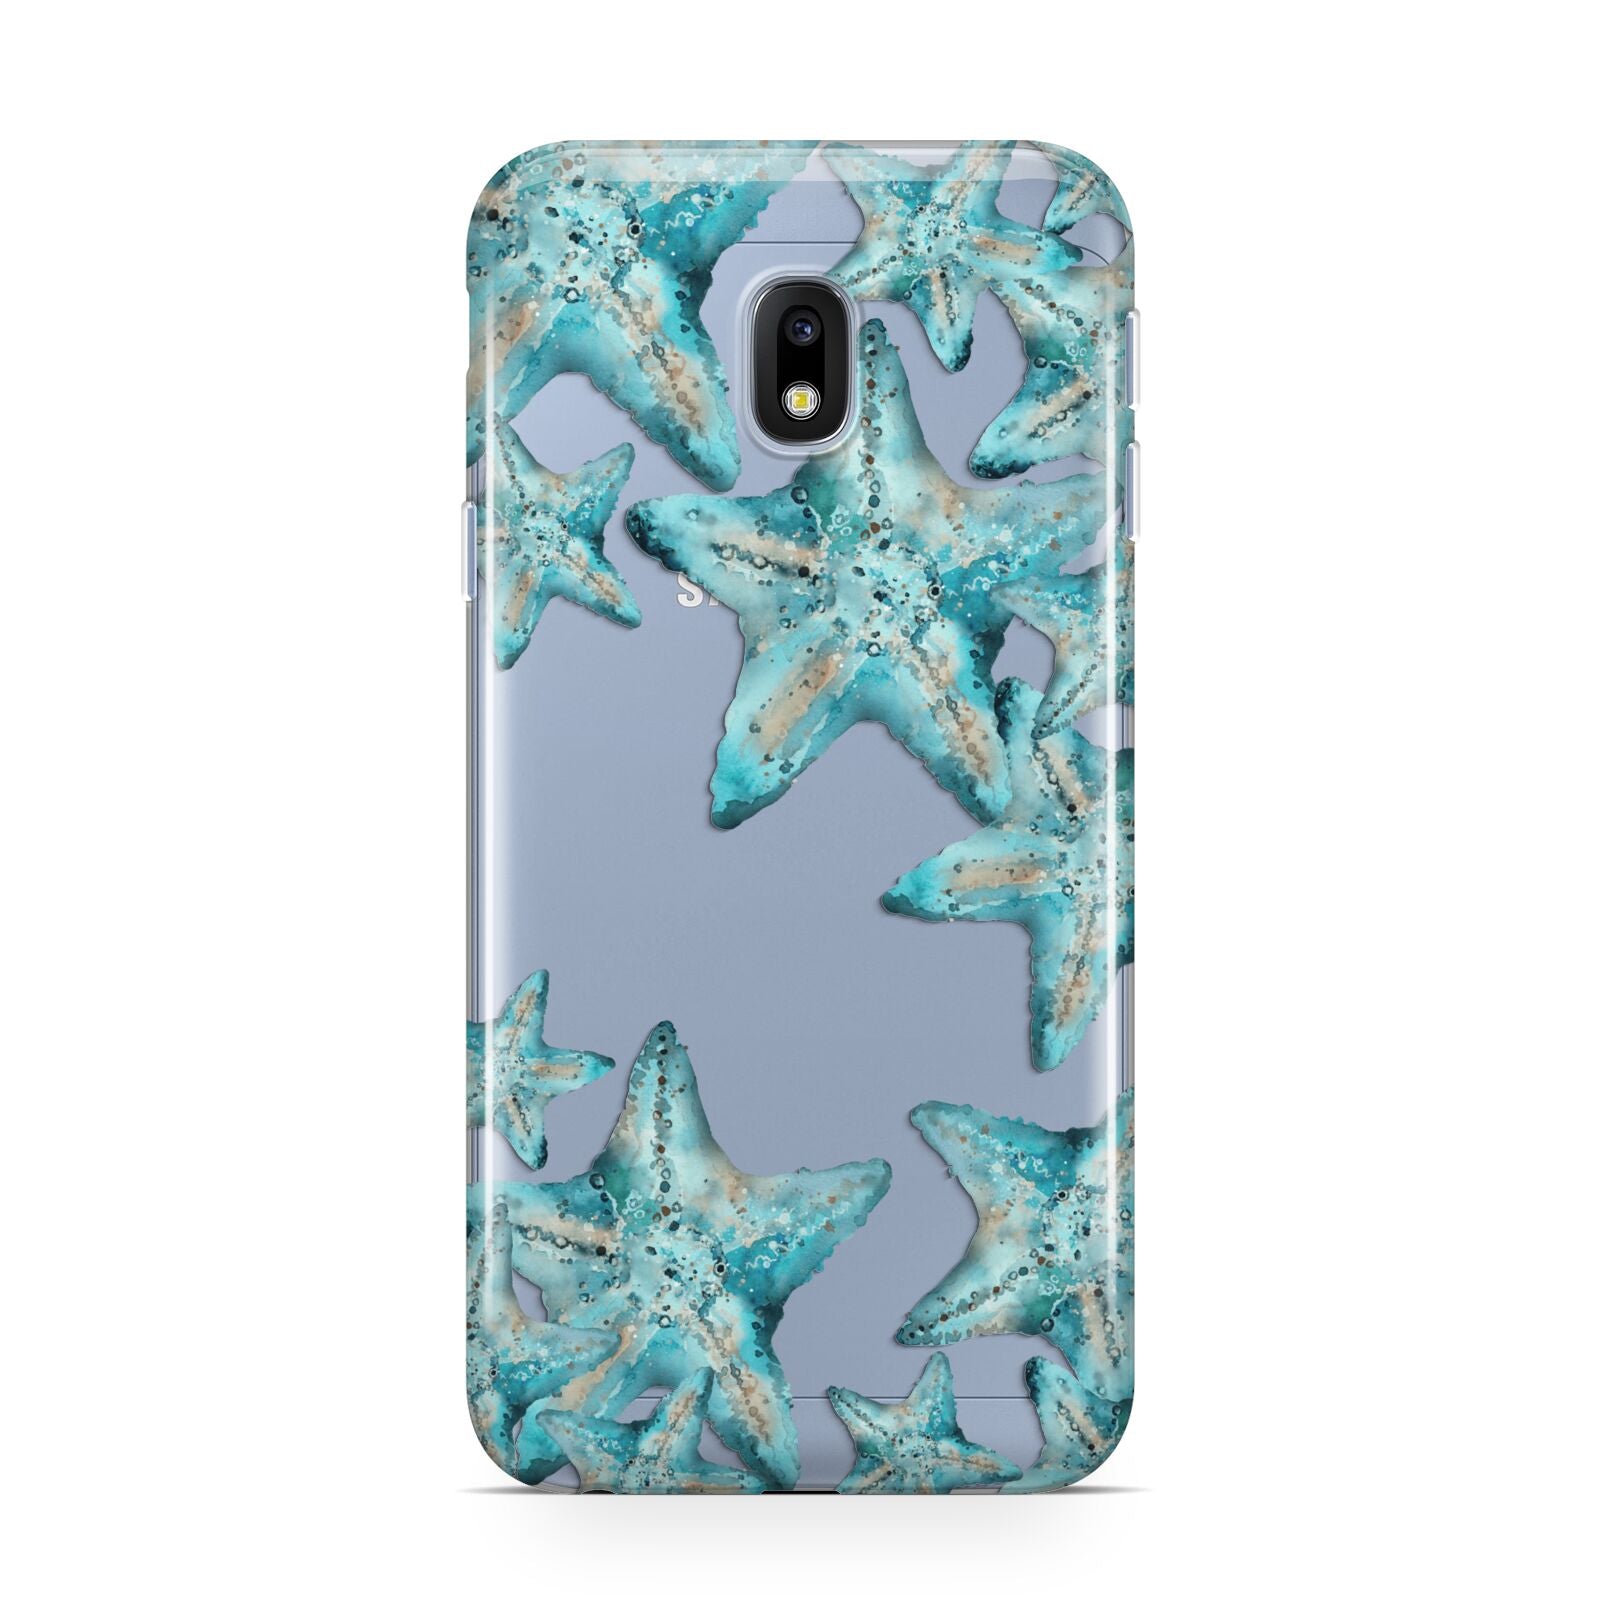 Starfish Samsung Galaxy J3 2017 Case